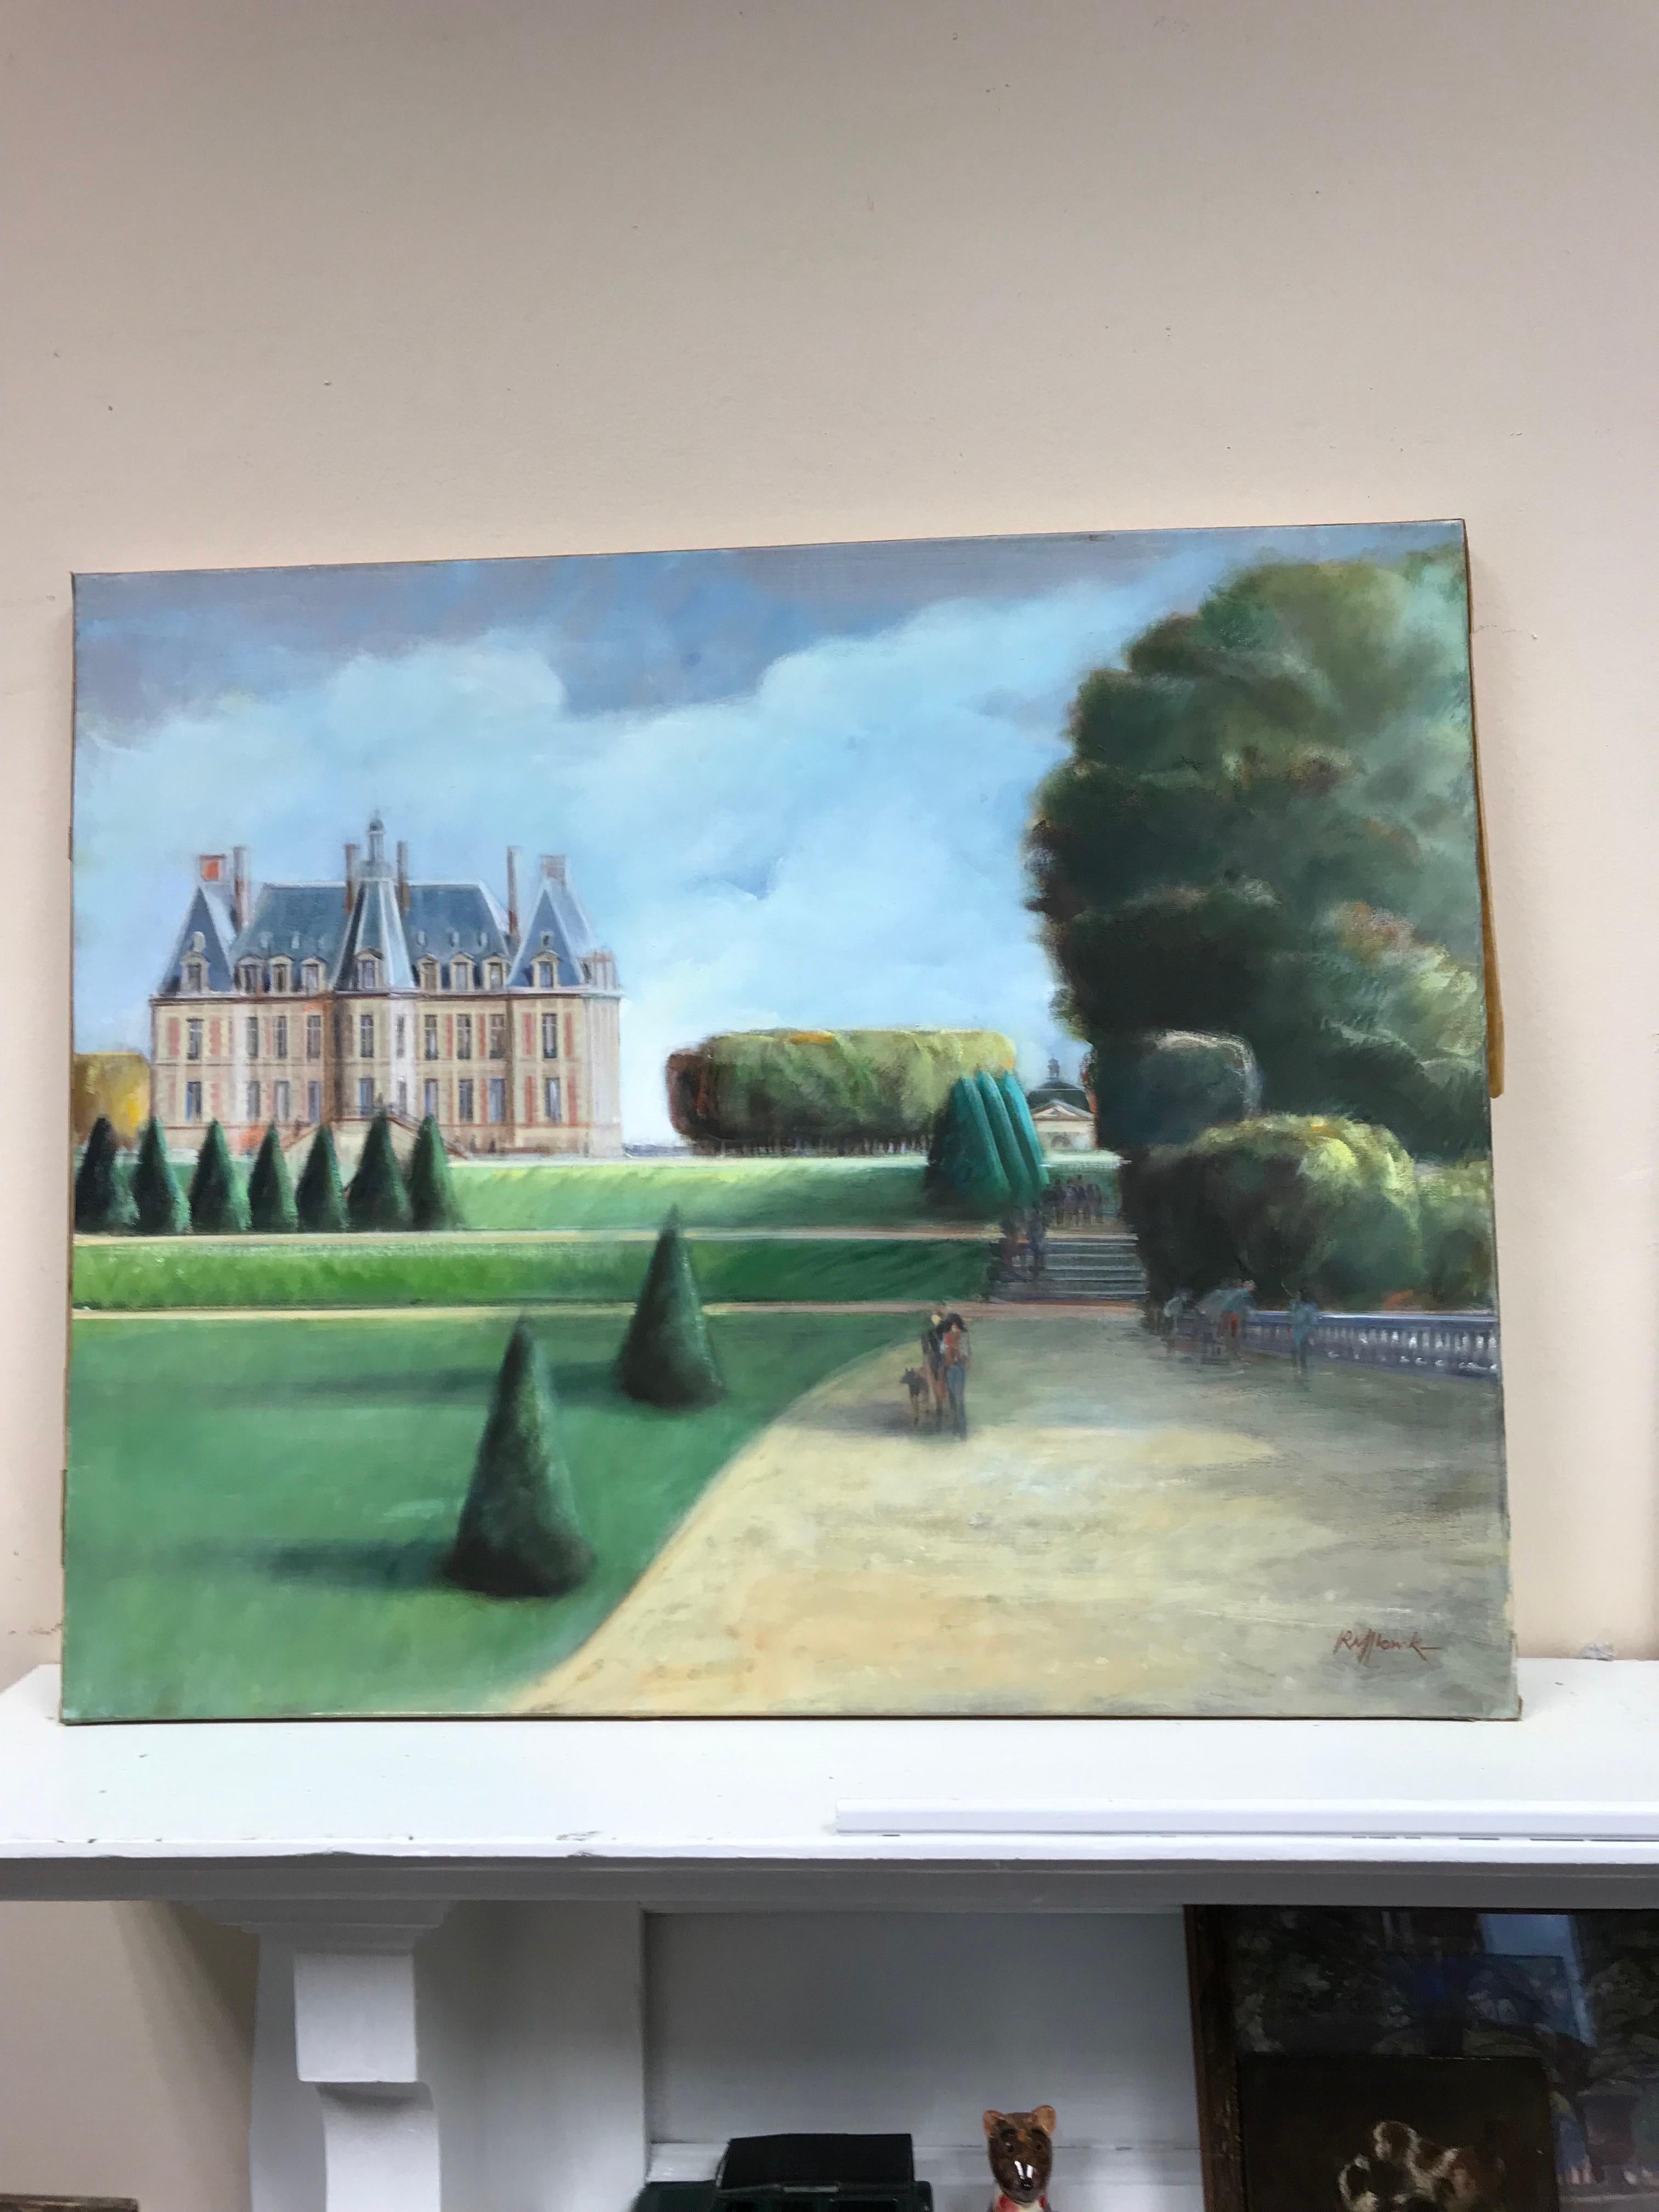 Chateau de Sceaux dans un parc, belle peinture à l'huile originale impressionniste française - Painting de French School